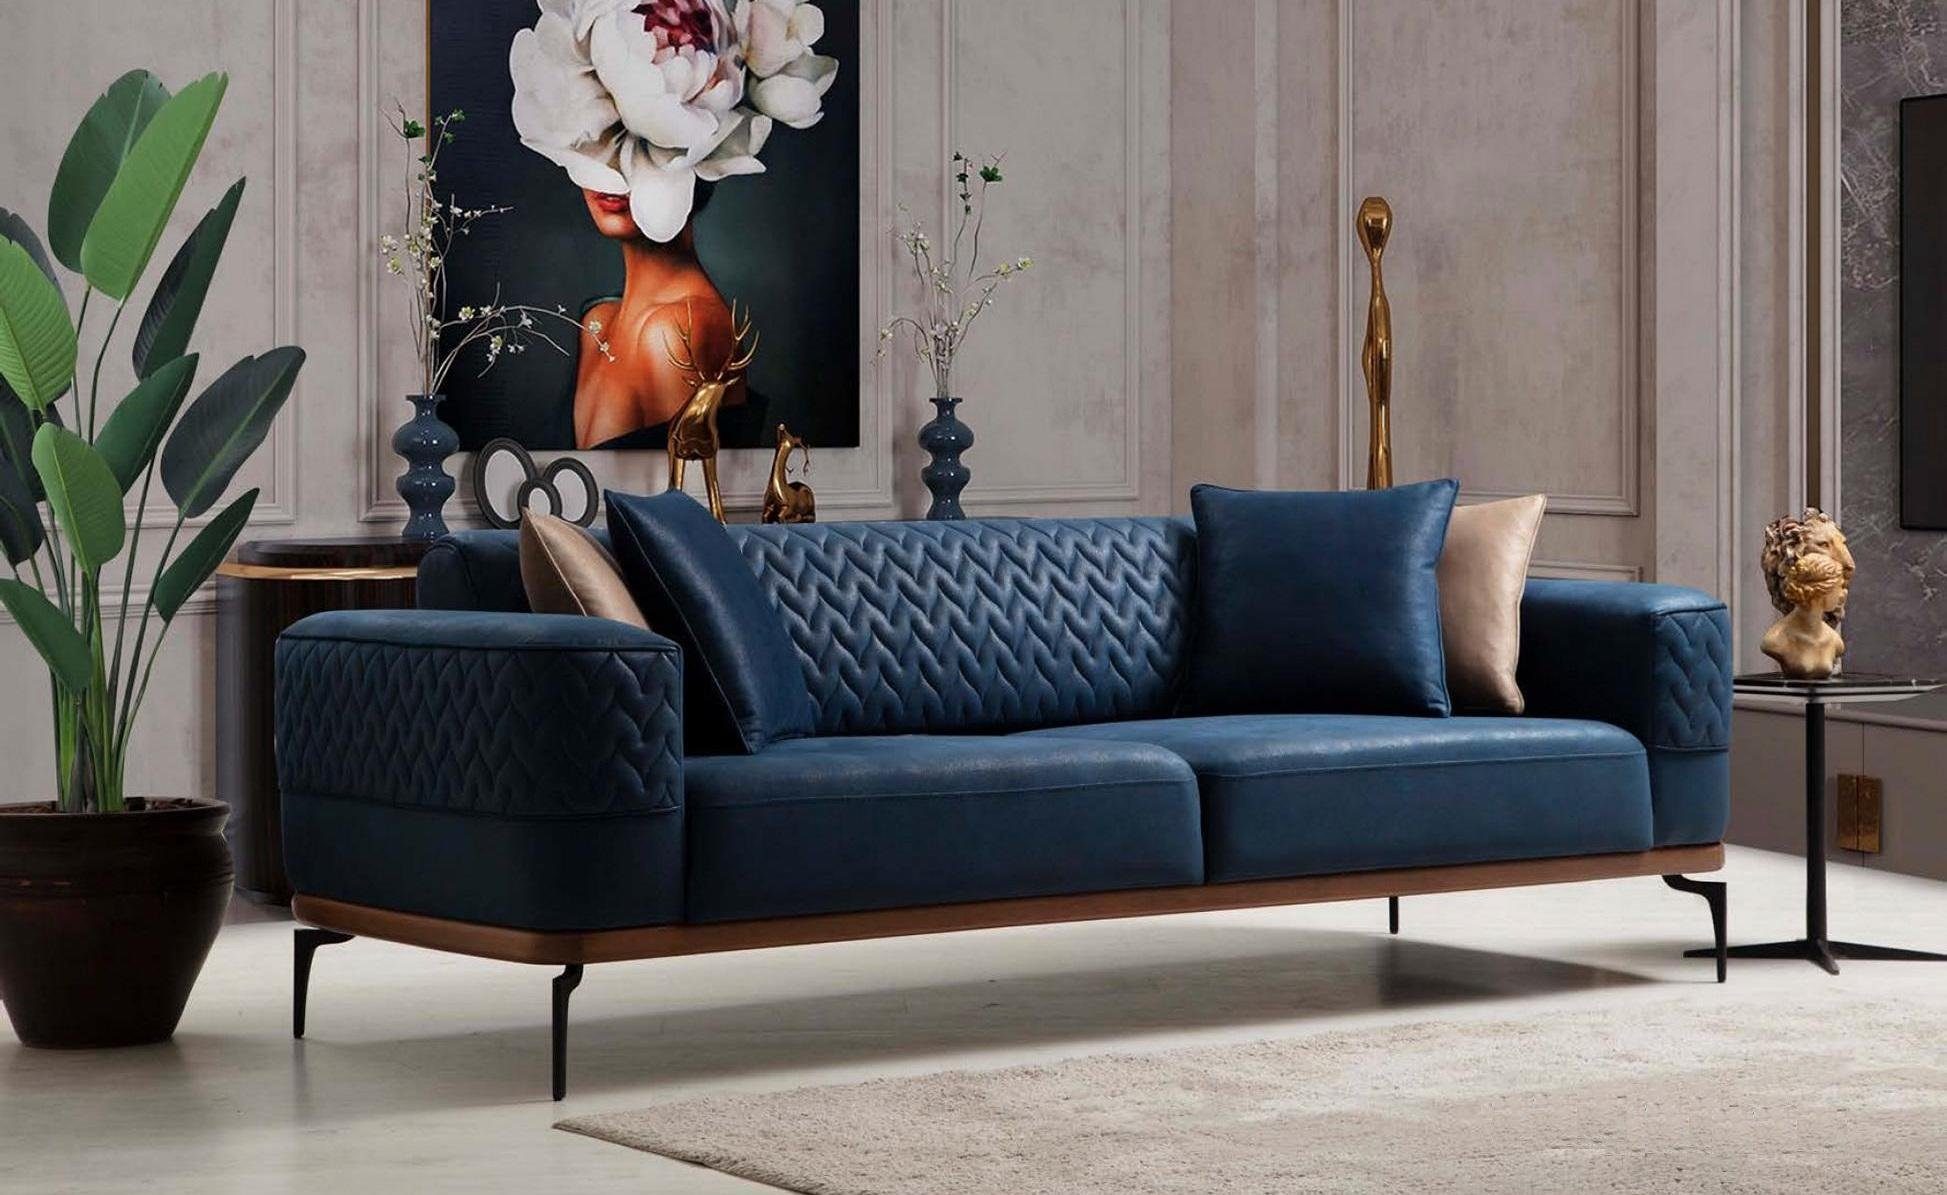 JVmoebel Sofa Design Dreisitzer Moderne Couch Blau Couchen Luxus Sofa, Made in Europe